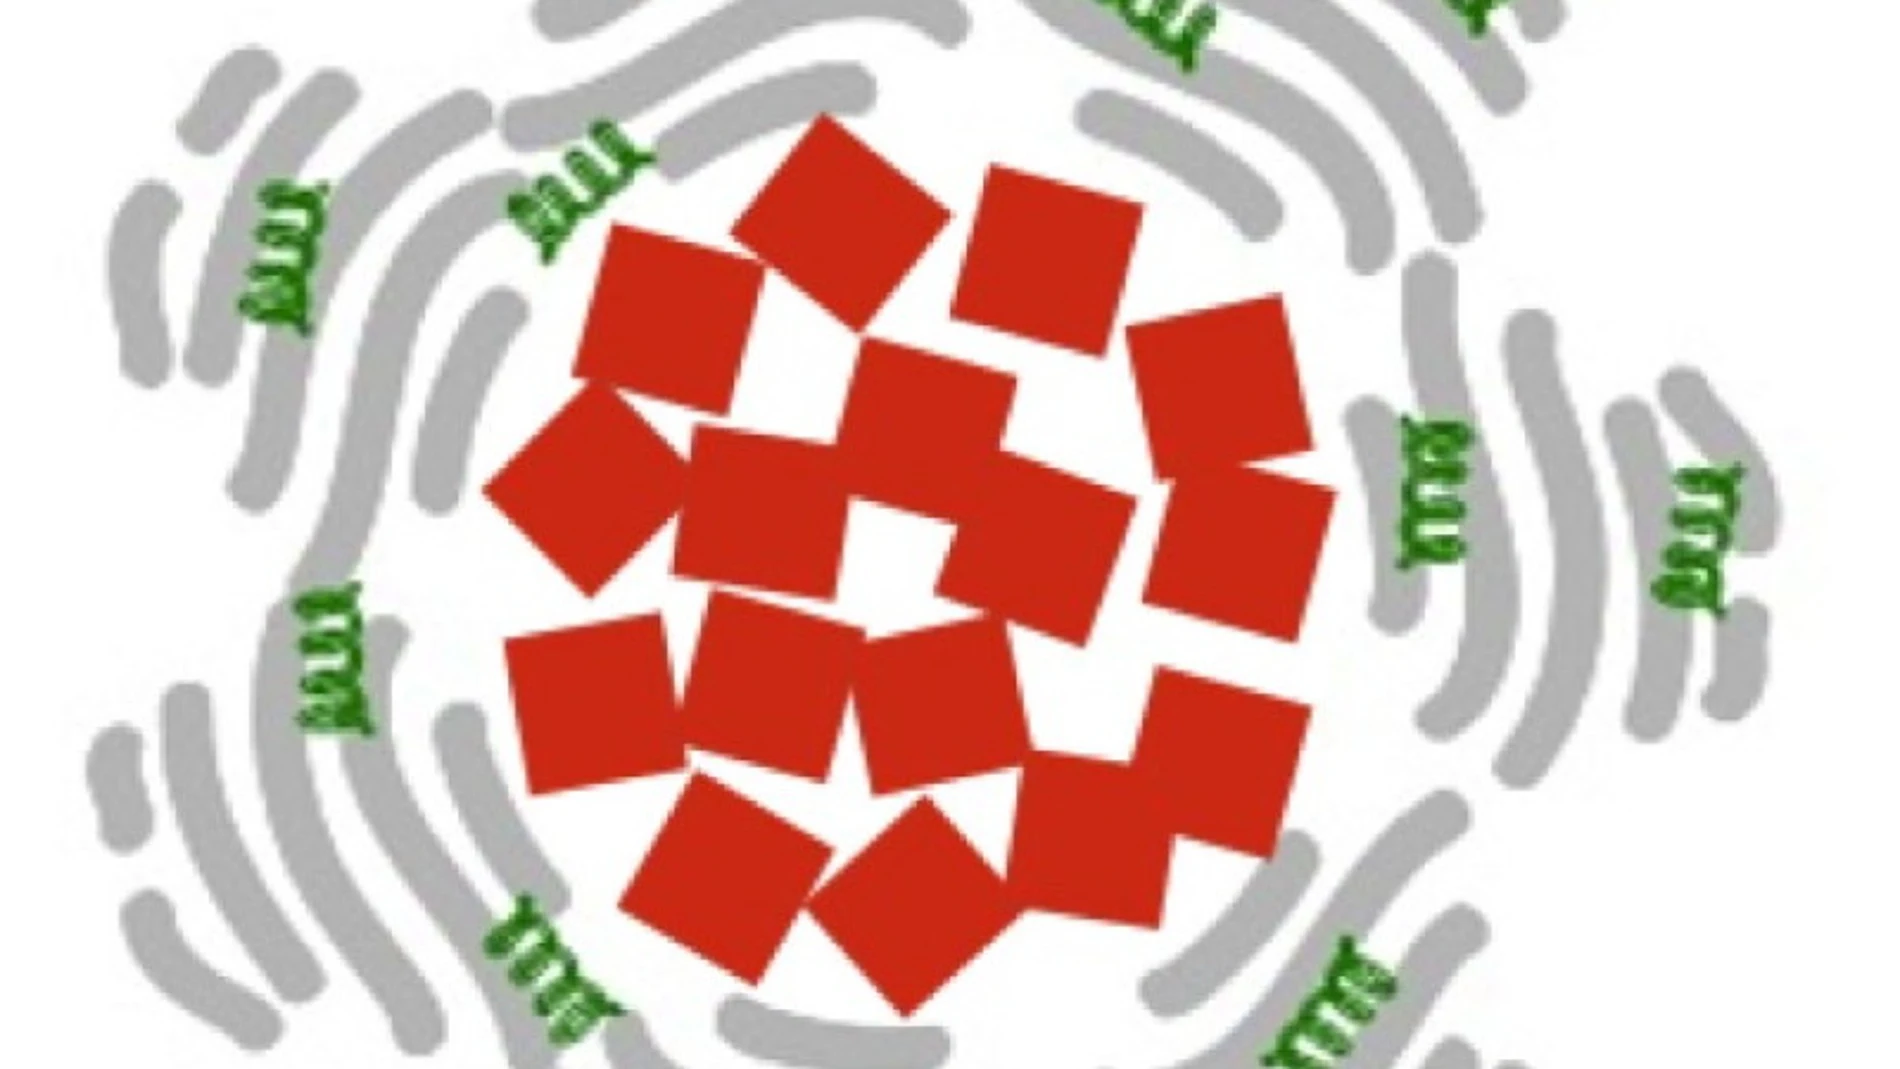 Cada nanopartícula está compuesta de un núcleo de óxido de hierro (cuadrados rojos) rodeado de albúmina (en gris) y del medicamento (tPA, en verde) que debe liberar